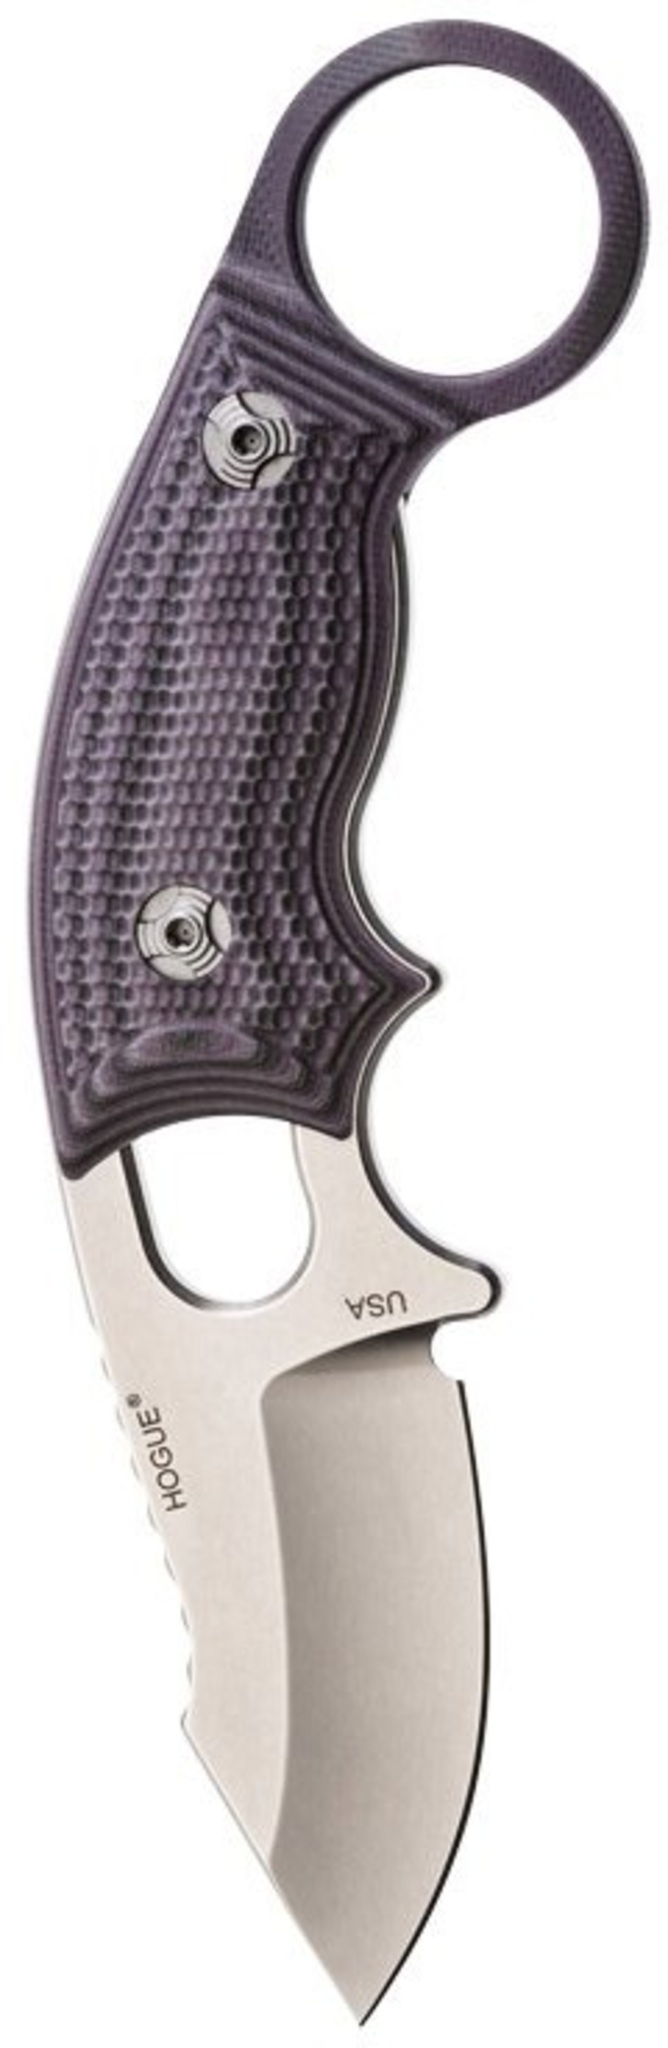 Нож с фиксированным клинком Hogue EX-F03, сталь 154CM Stone-Tumbled Clip Point, рукоять стеклотекстолит G-Mascus® - Purple 5.7 см.